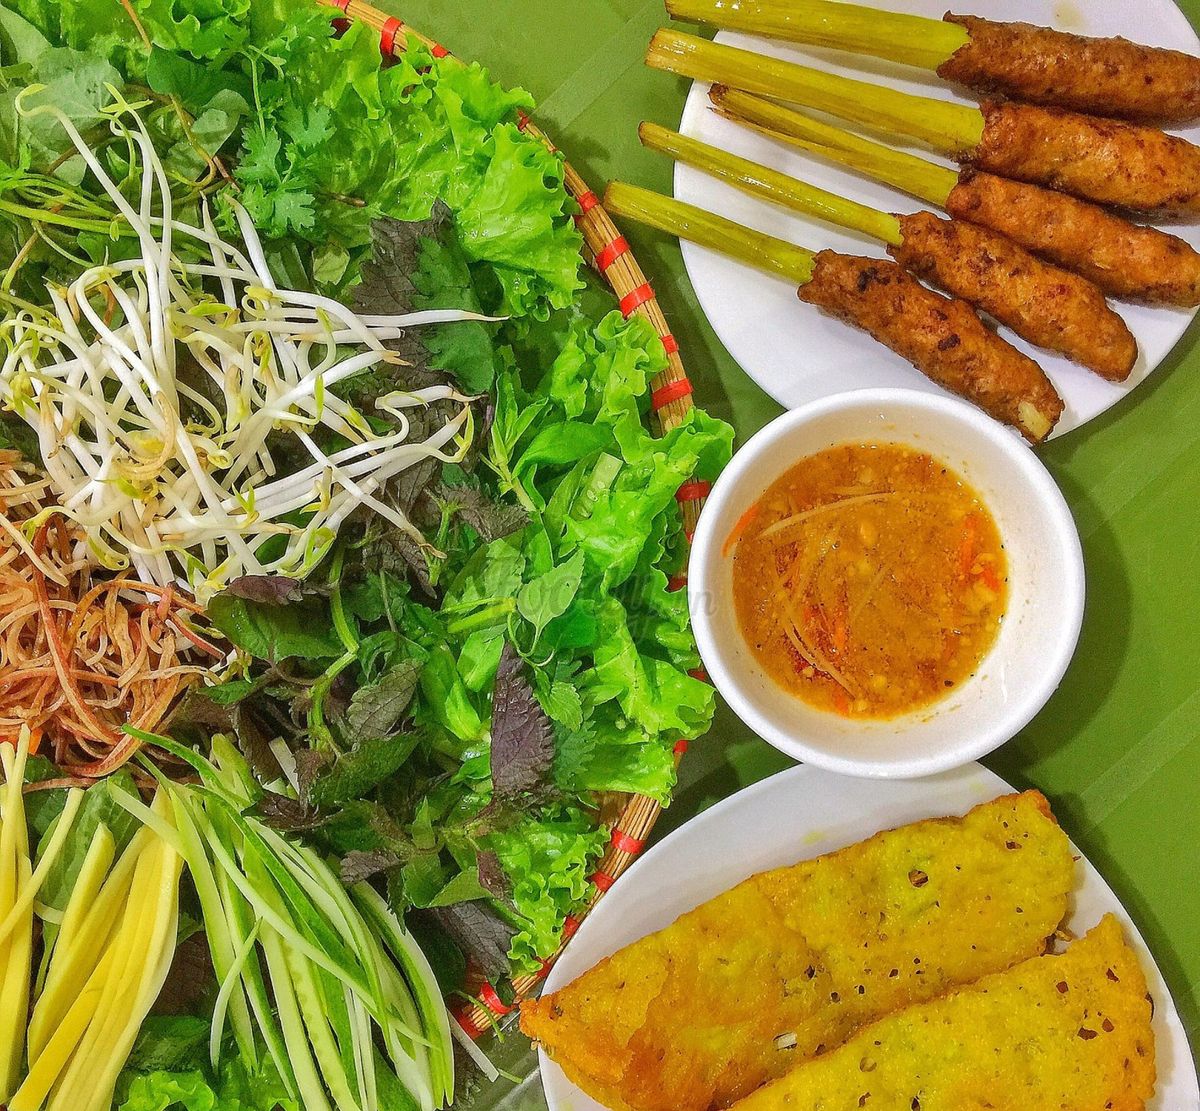 Kinh nghiệm ăn uống tại Đà Nẵng bạn đã biết chưa? 5